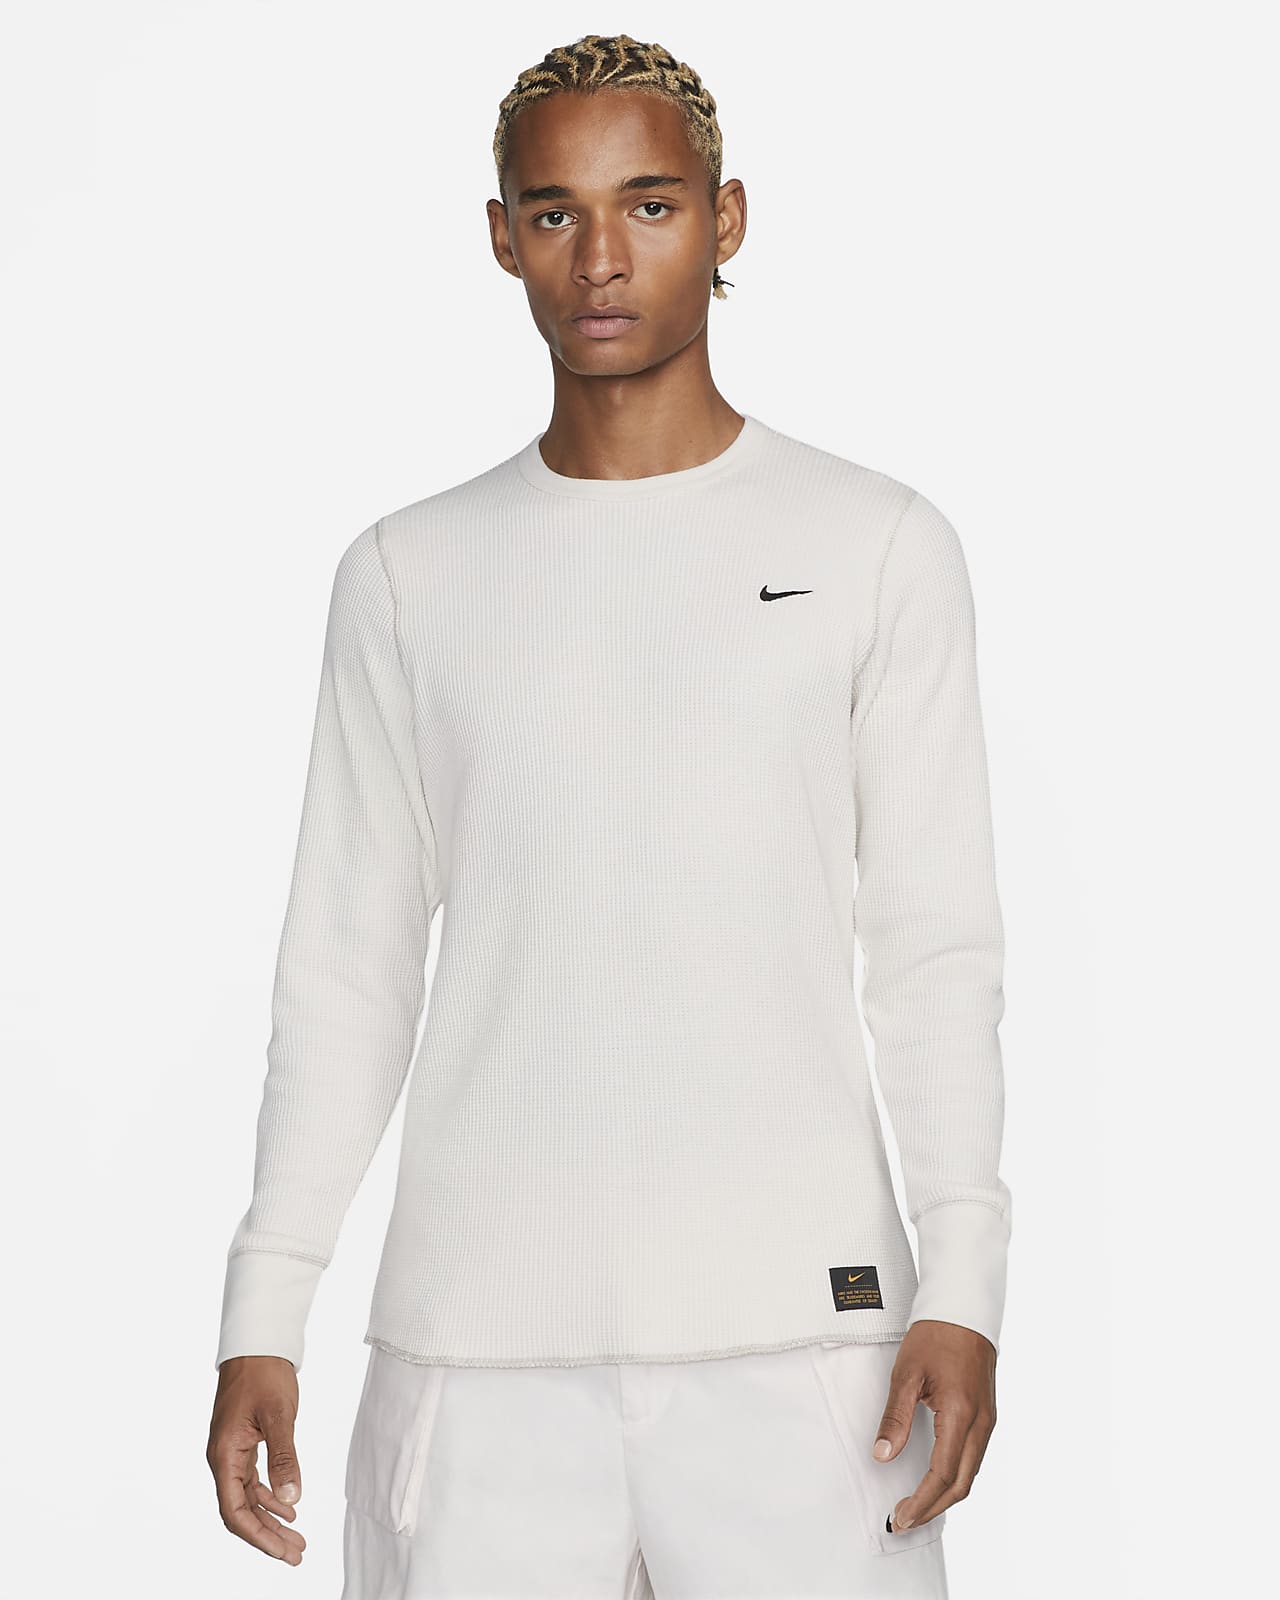 Ανδρική μακρυμάνικη μπλούζα από βαρύ ύφασμα πικέ Nike Life